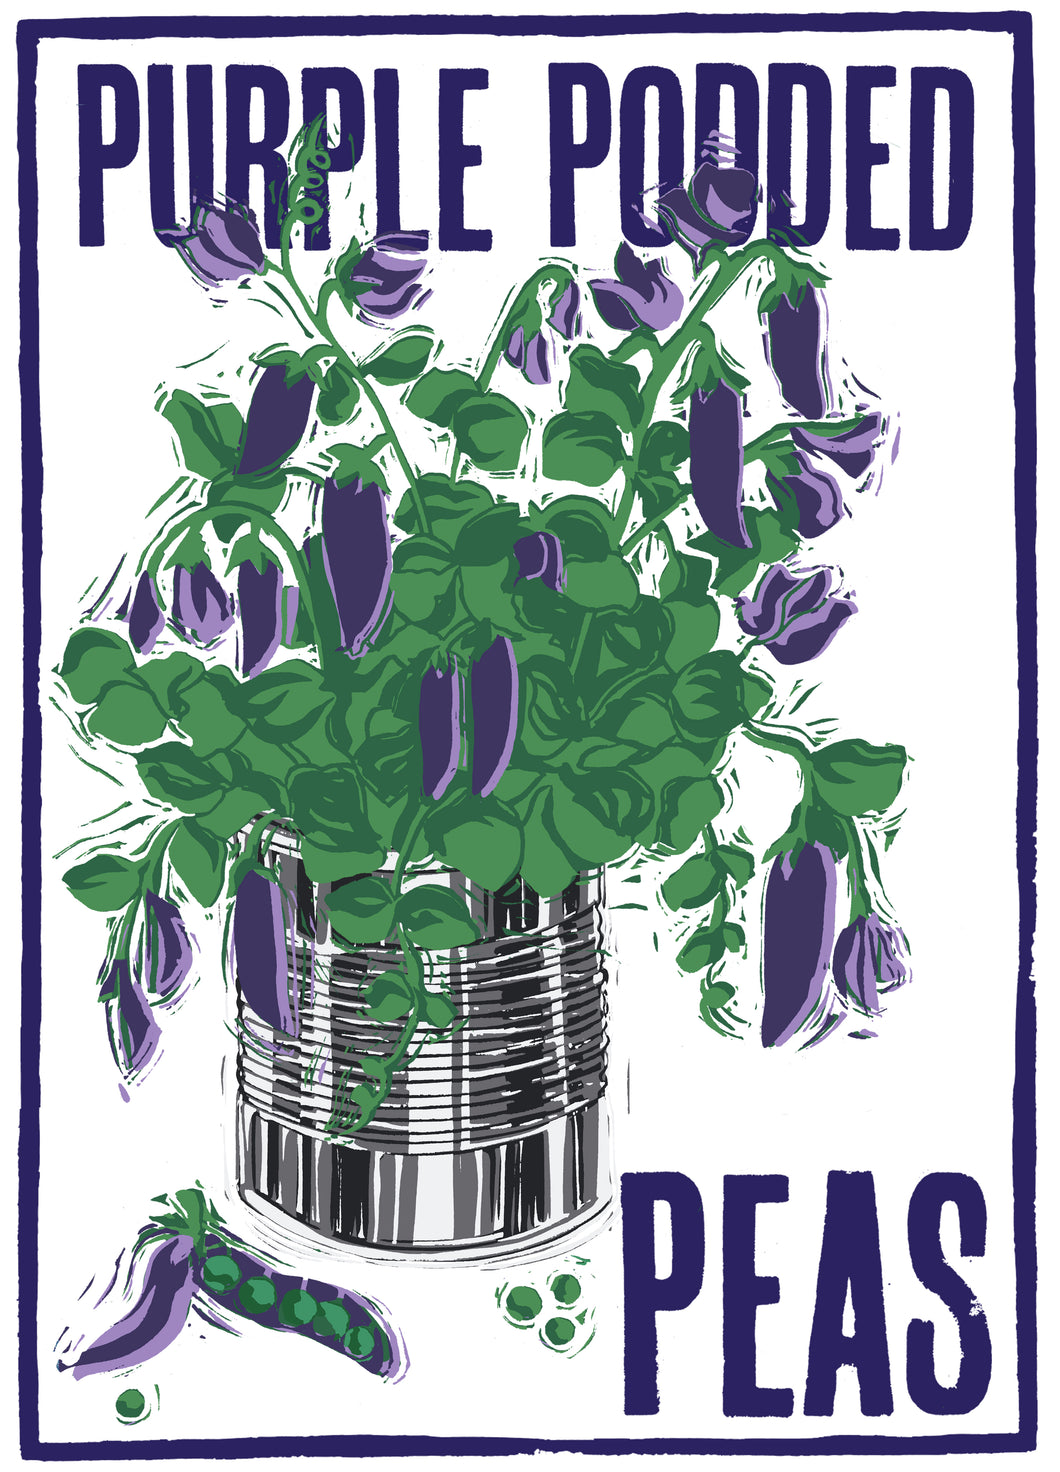 Purple Podded Peas